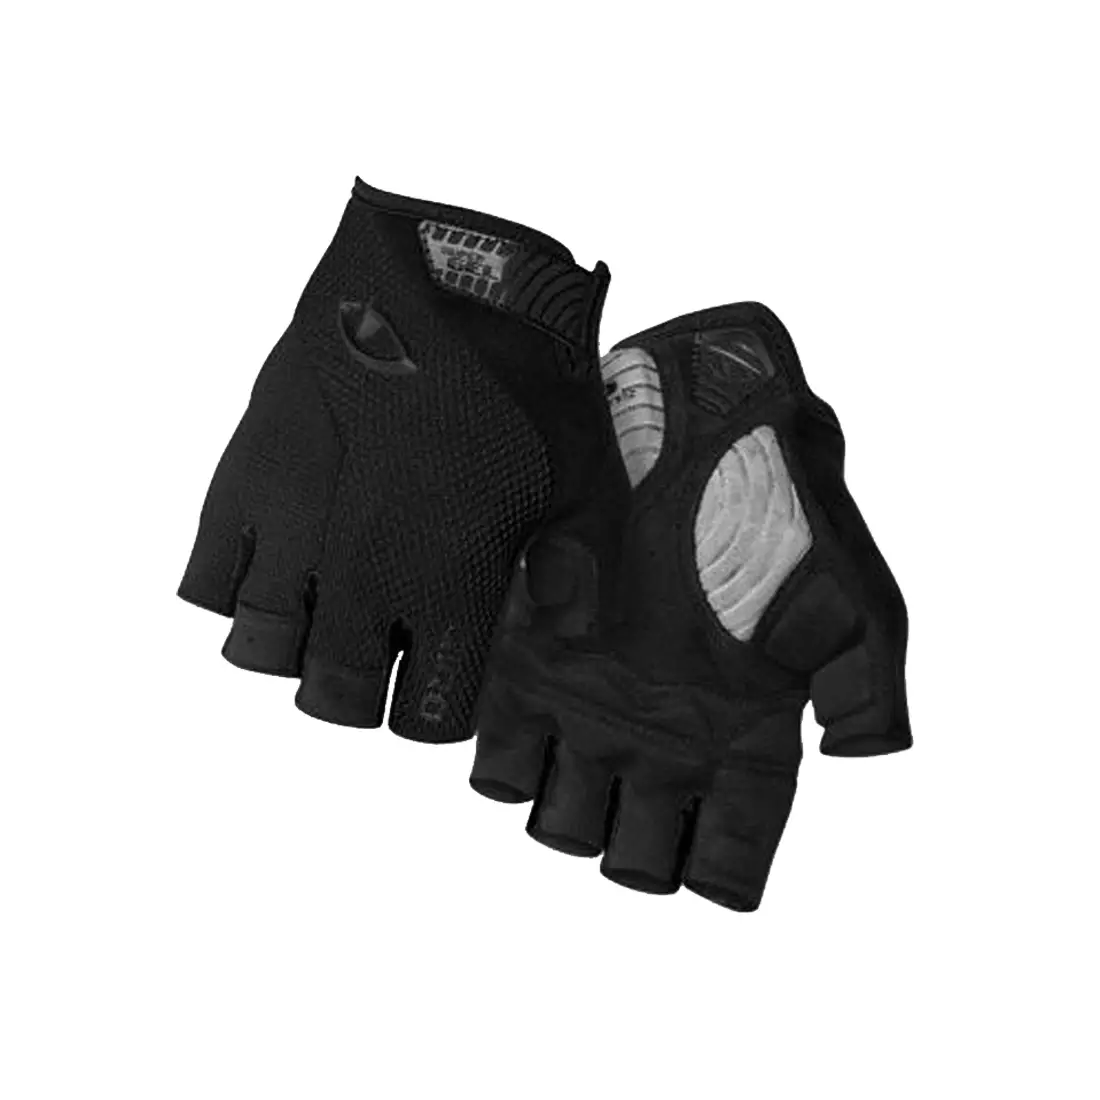 GIRO STRADE DURE mănuși de ciclism negre